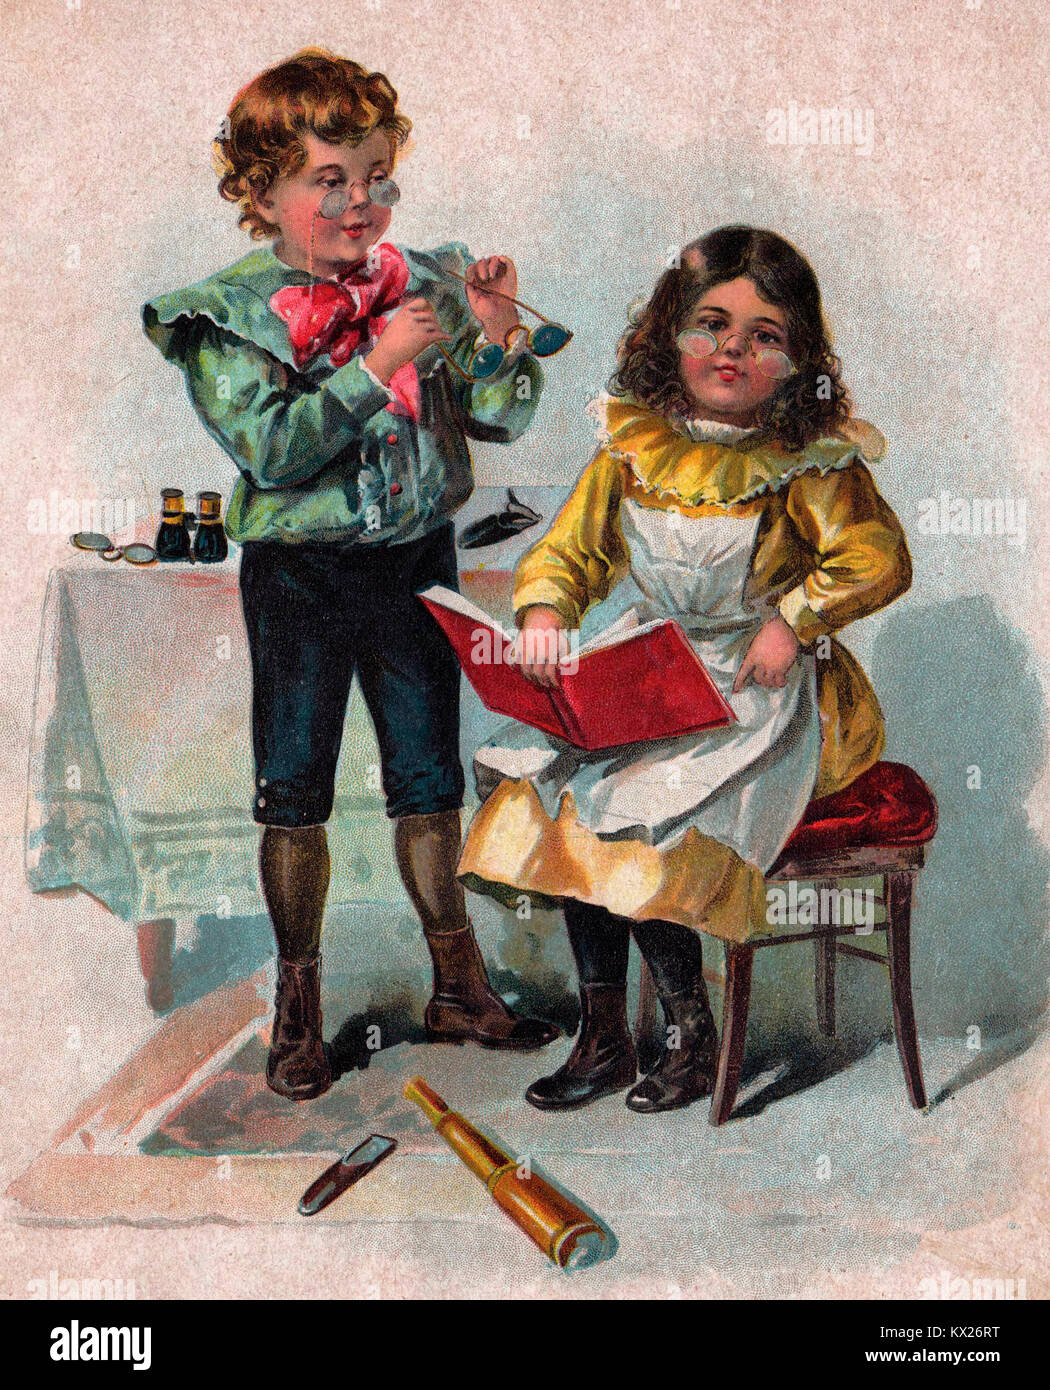 L'opticien - Infirmières de l'image de petit garçon et fille jouant du patient et de l'opticien Banque D'Images